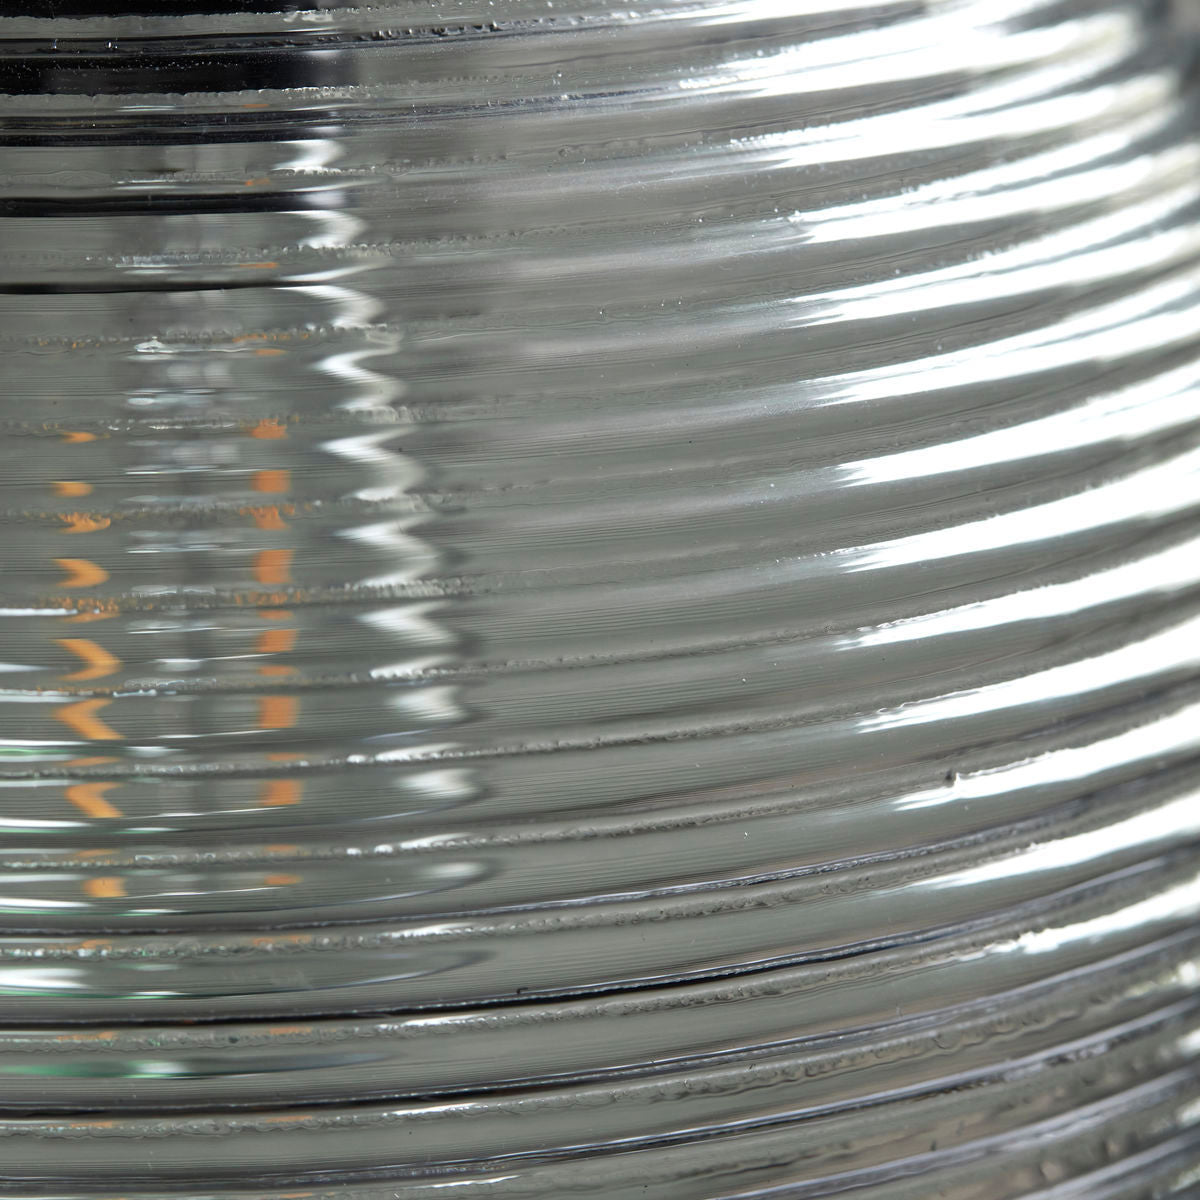 Lampe globe transparent - GAIA - maison bloom concept